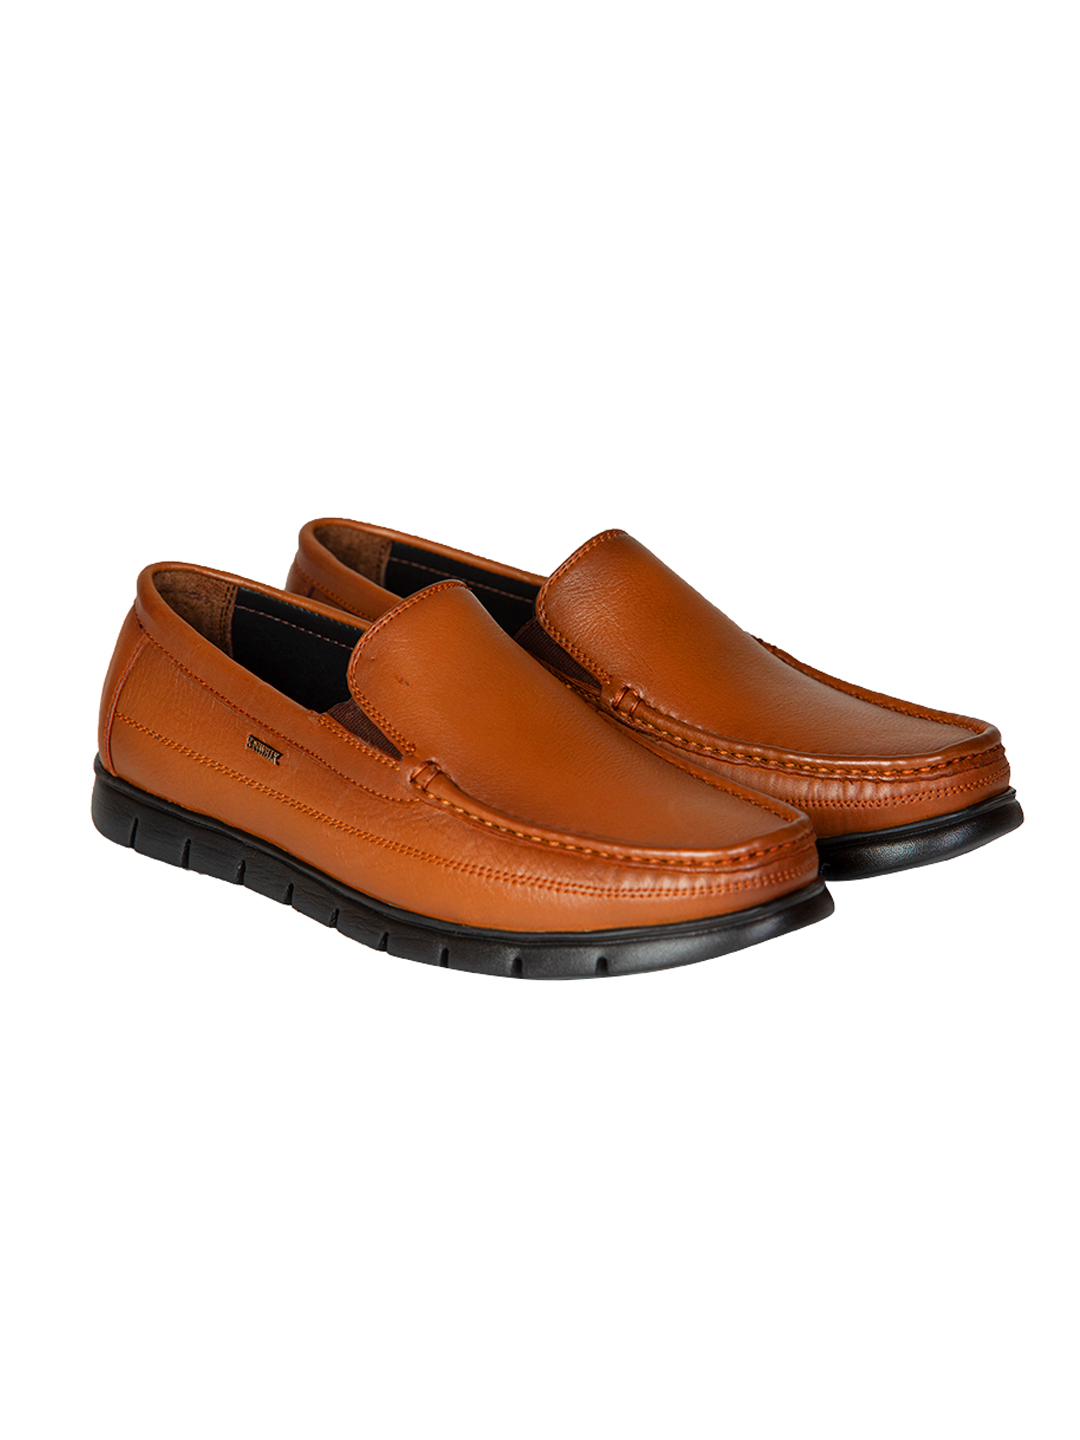 Buy Von Wellx Germany Comfort Tan Zion Shoes Online in Salalah